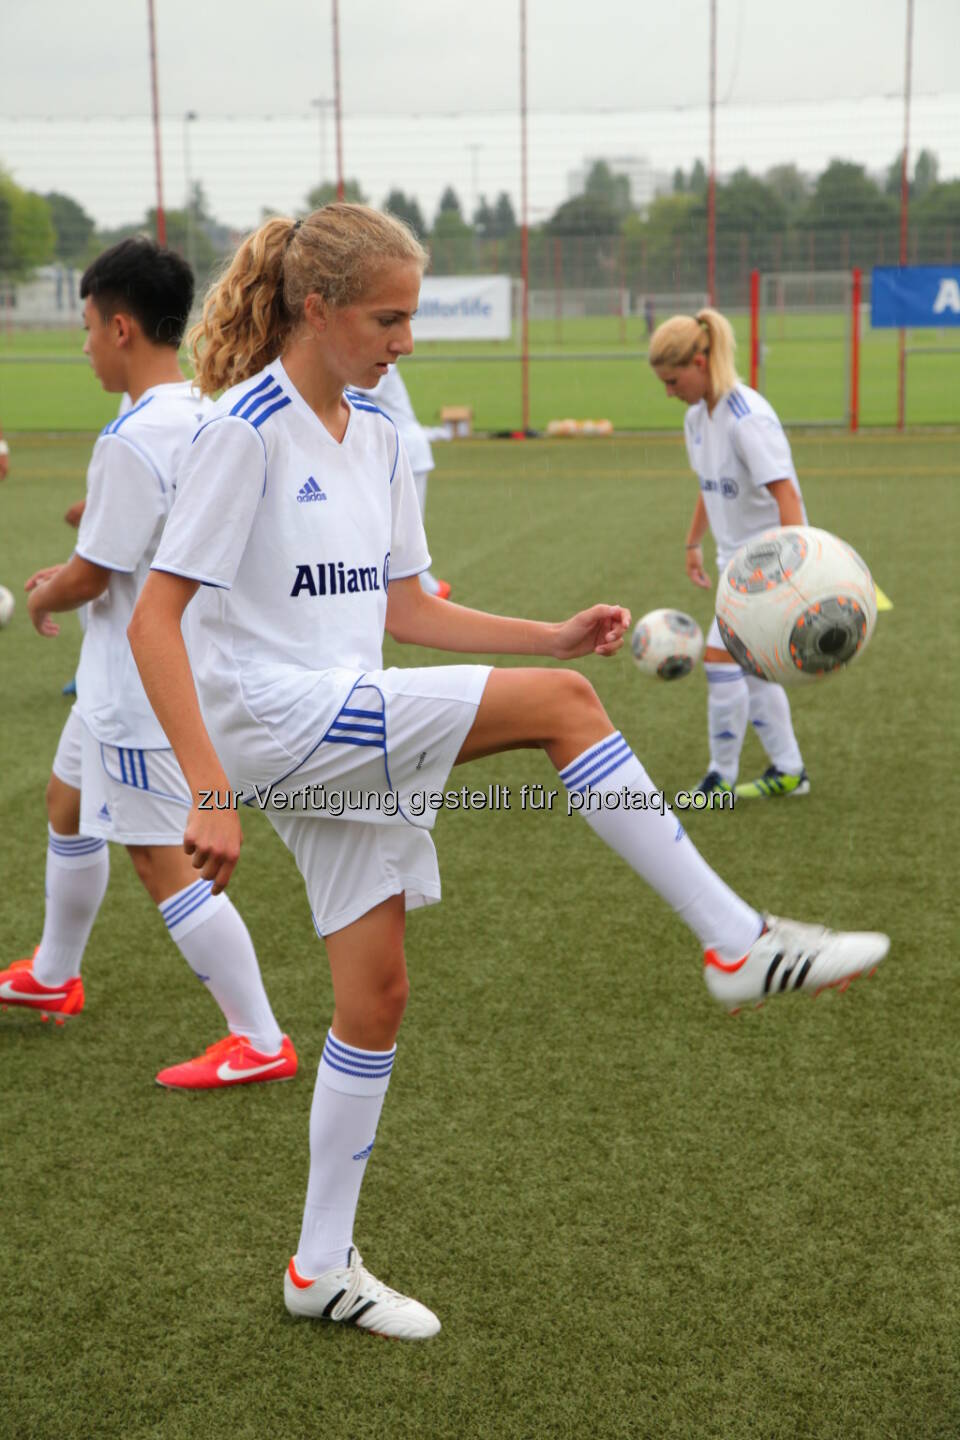 Puls 4 und Allianz suchen junge Kicker für das Allianz Football Camp am Trainingsgelände des FC Bayern München, Mädchen, Gaberln, Fussball (Bild: Allianz)